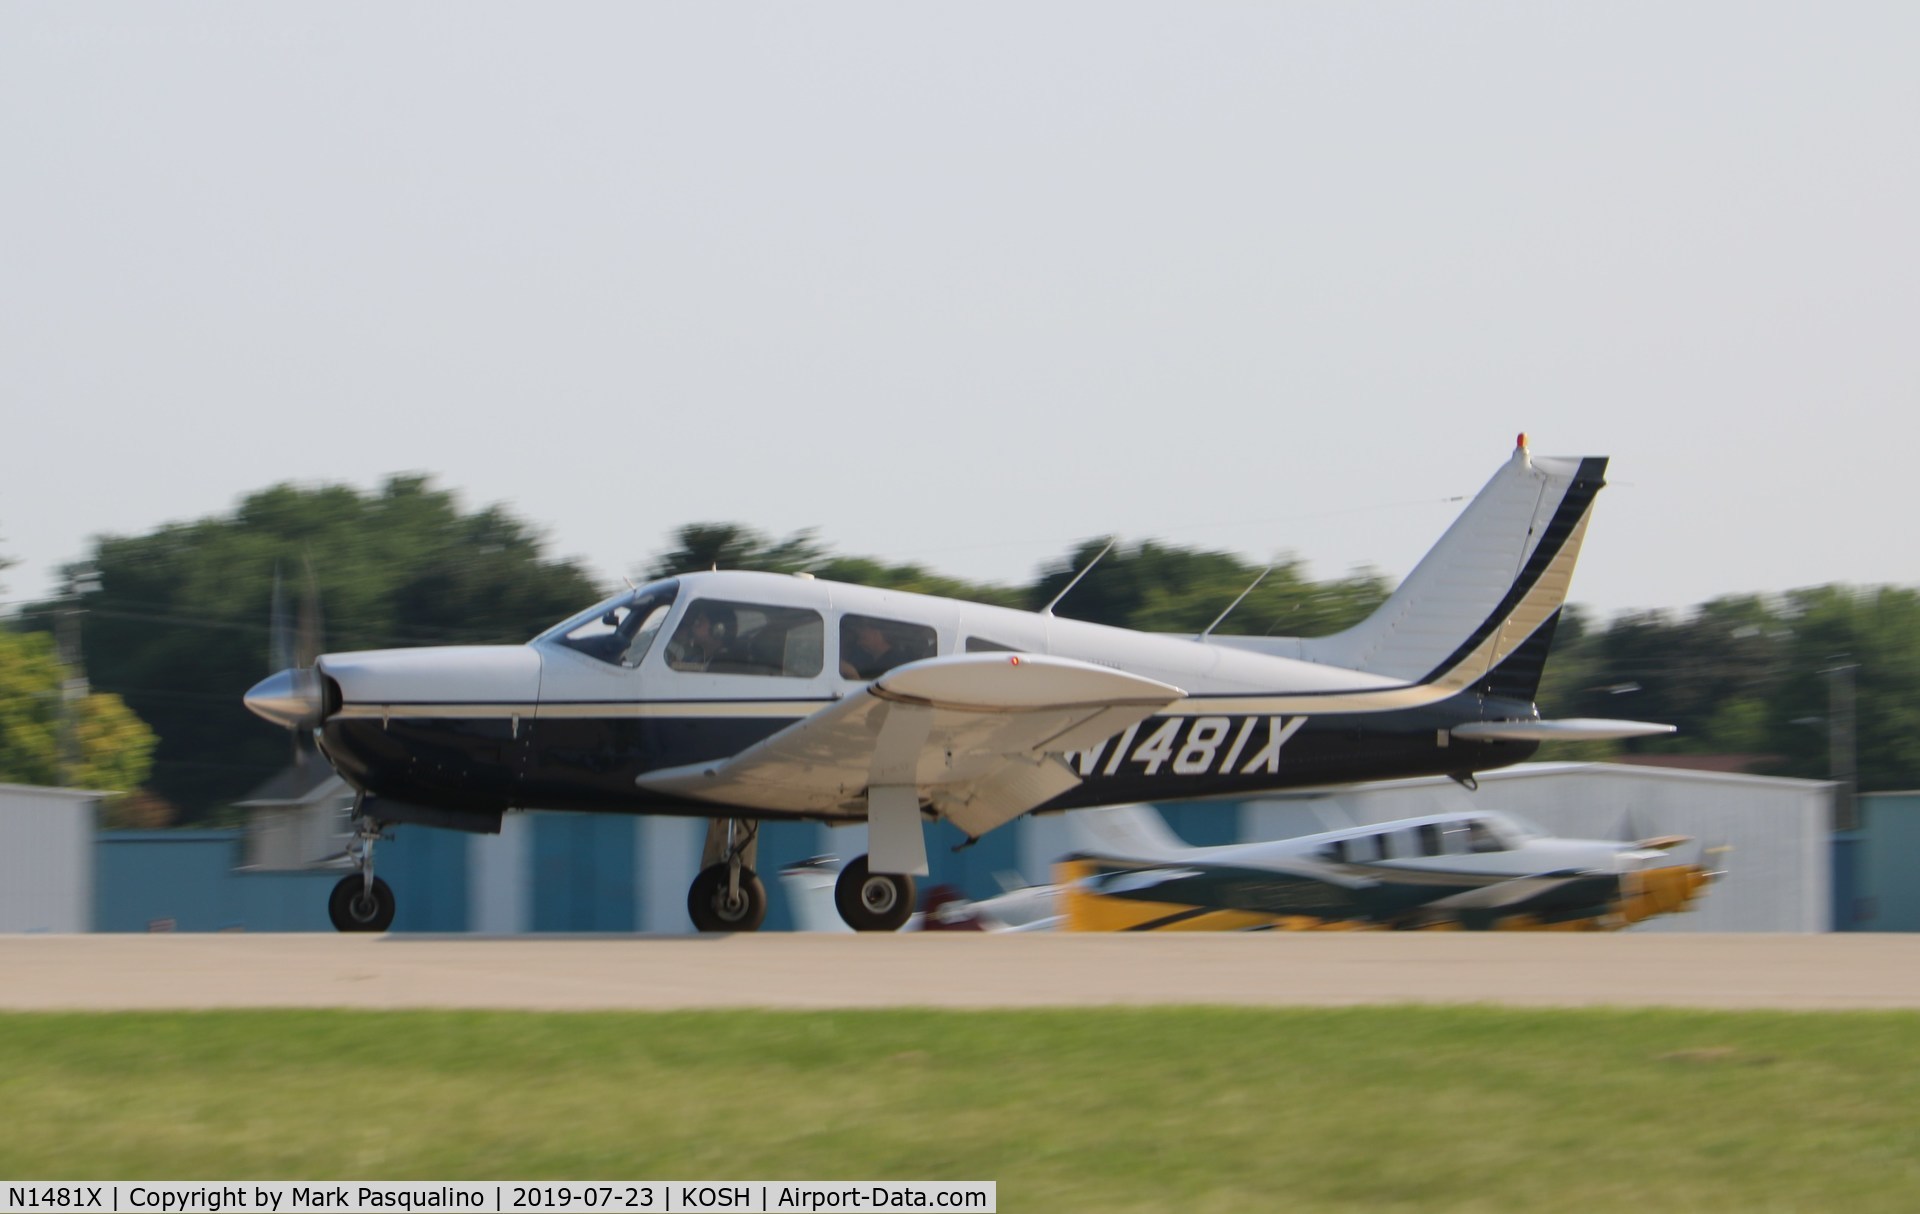 N1481X, 1975 Piper PA-28R-200 Cherokee Arrow C/N 28R-7535289, Piper PA-28R-200